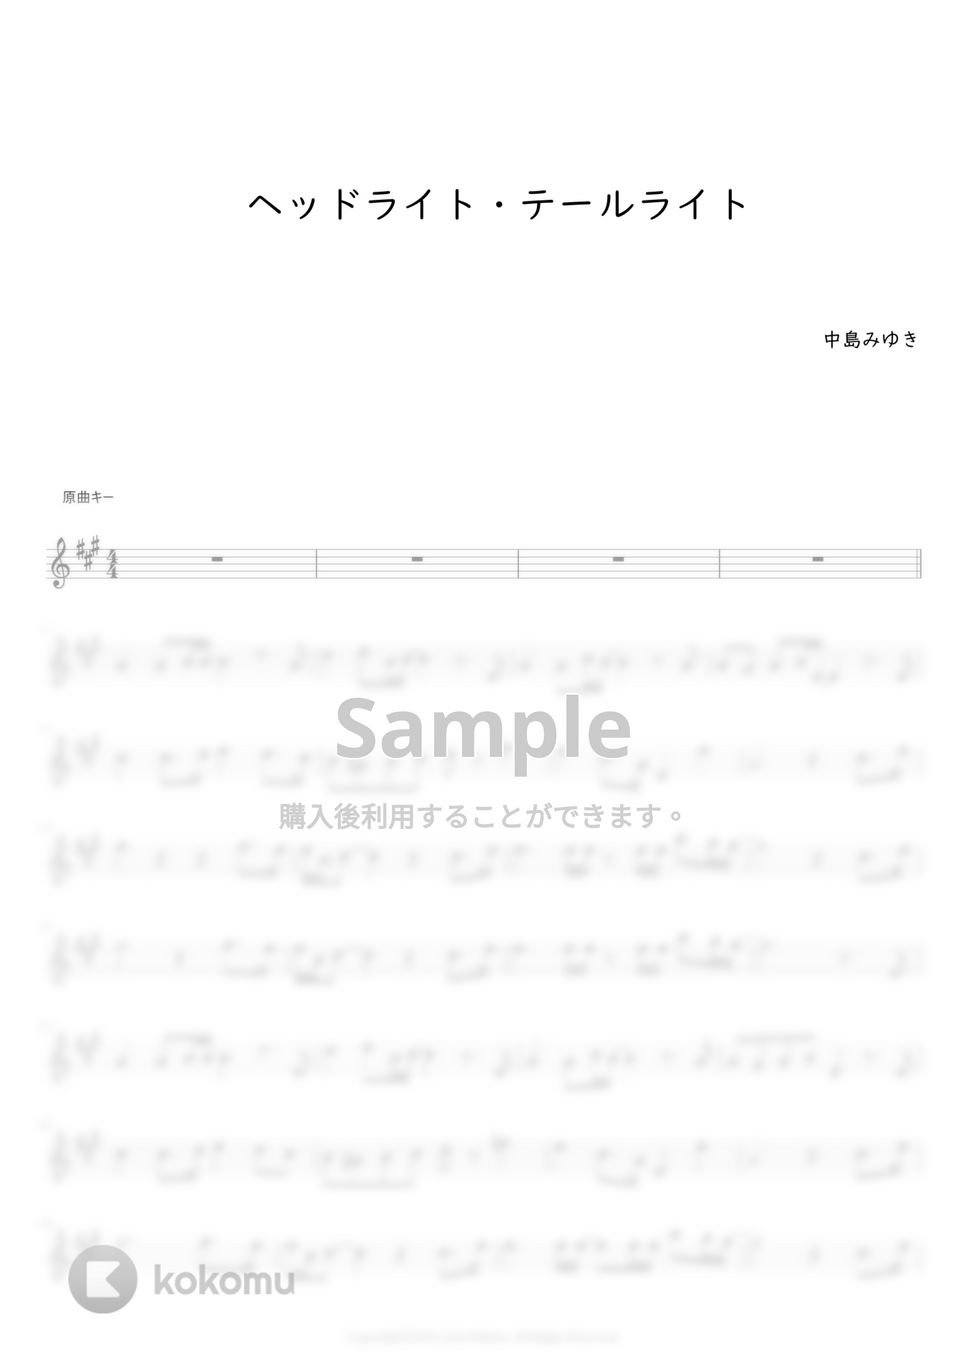 中島みゆき - ヘッドライト・テールライト (フルート用メロディー譜) by もりたあいか